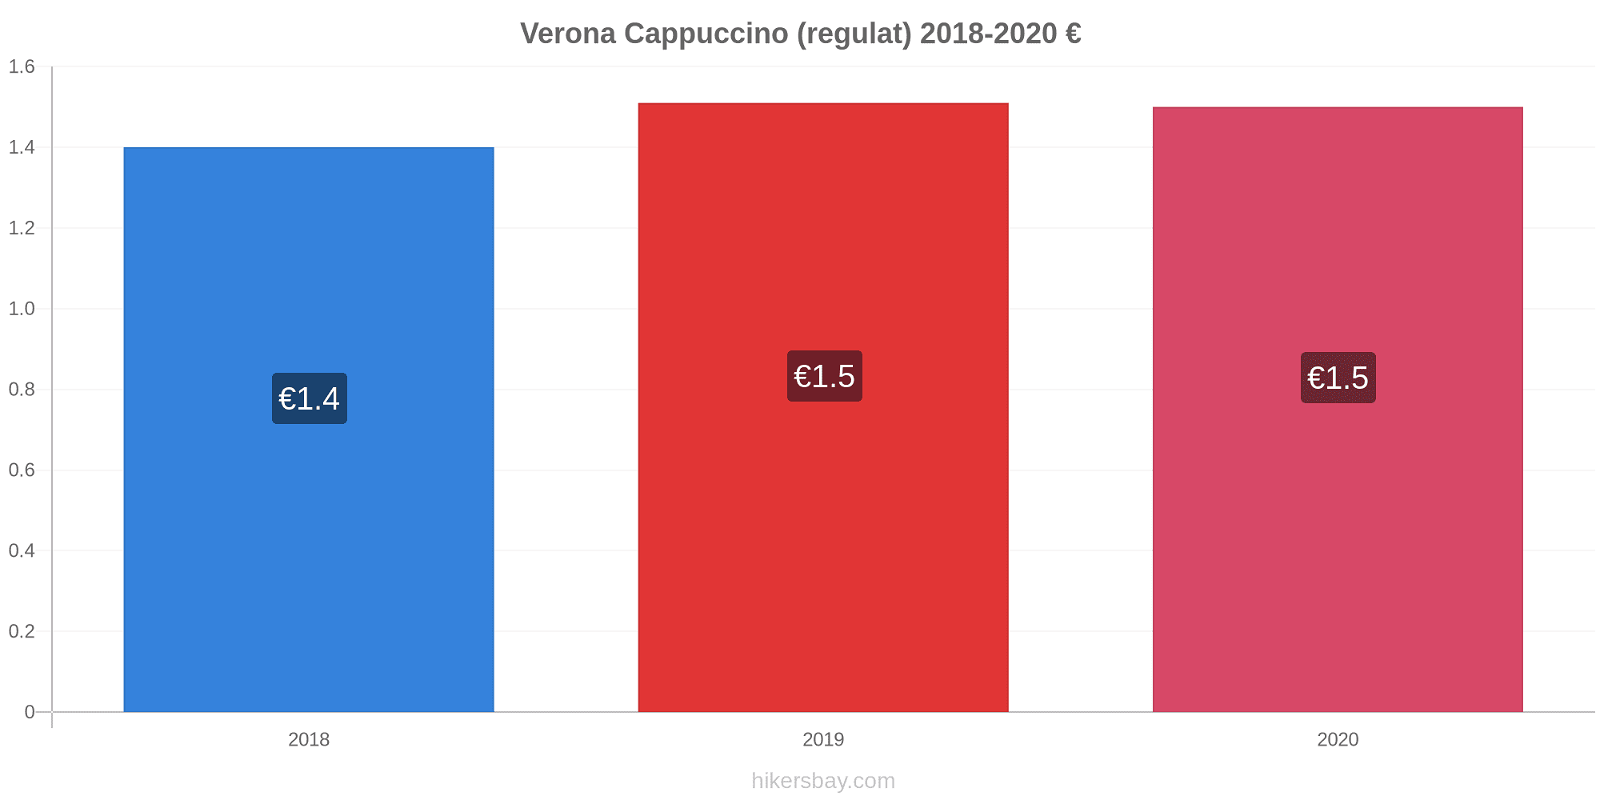 Verona modificări de preț Cappuccino (regulat) hikersbay.com